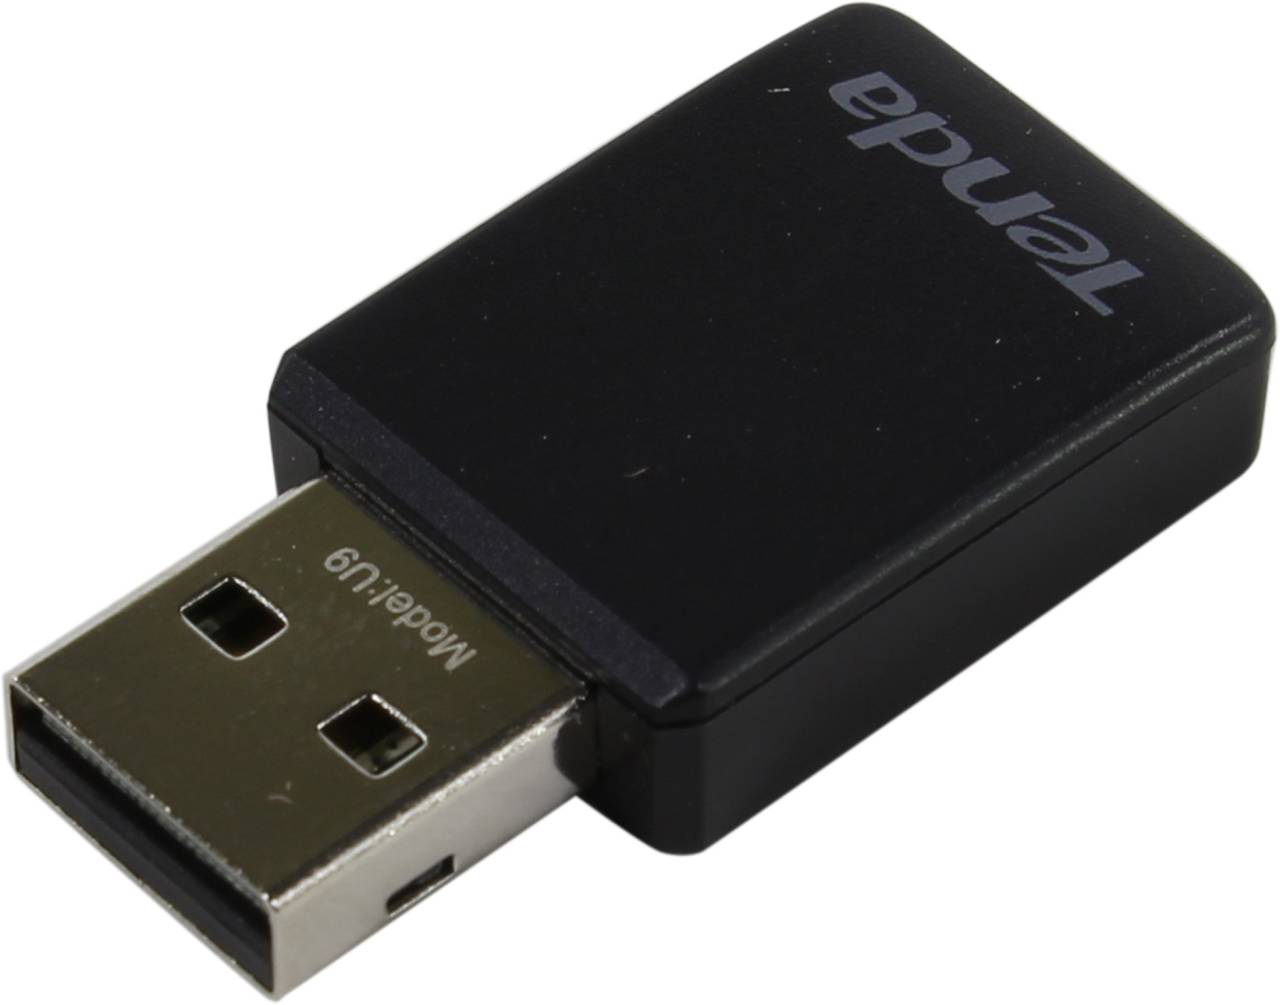    USB TENDA [U9] Wireless Adapter (802.11a/b/g/n, 433Mbps, 6dBi)